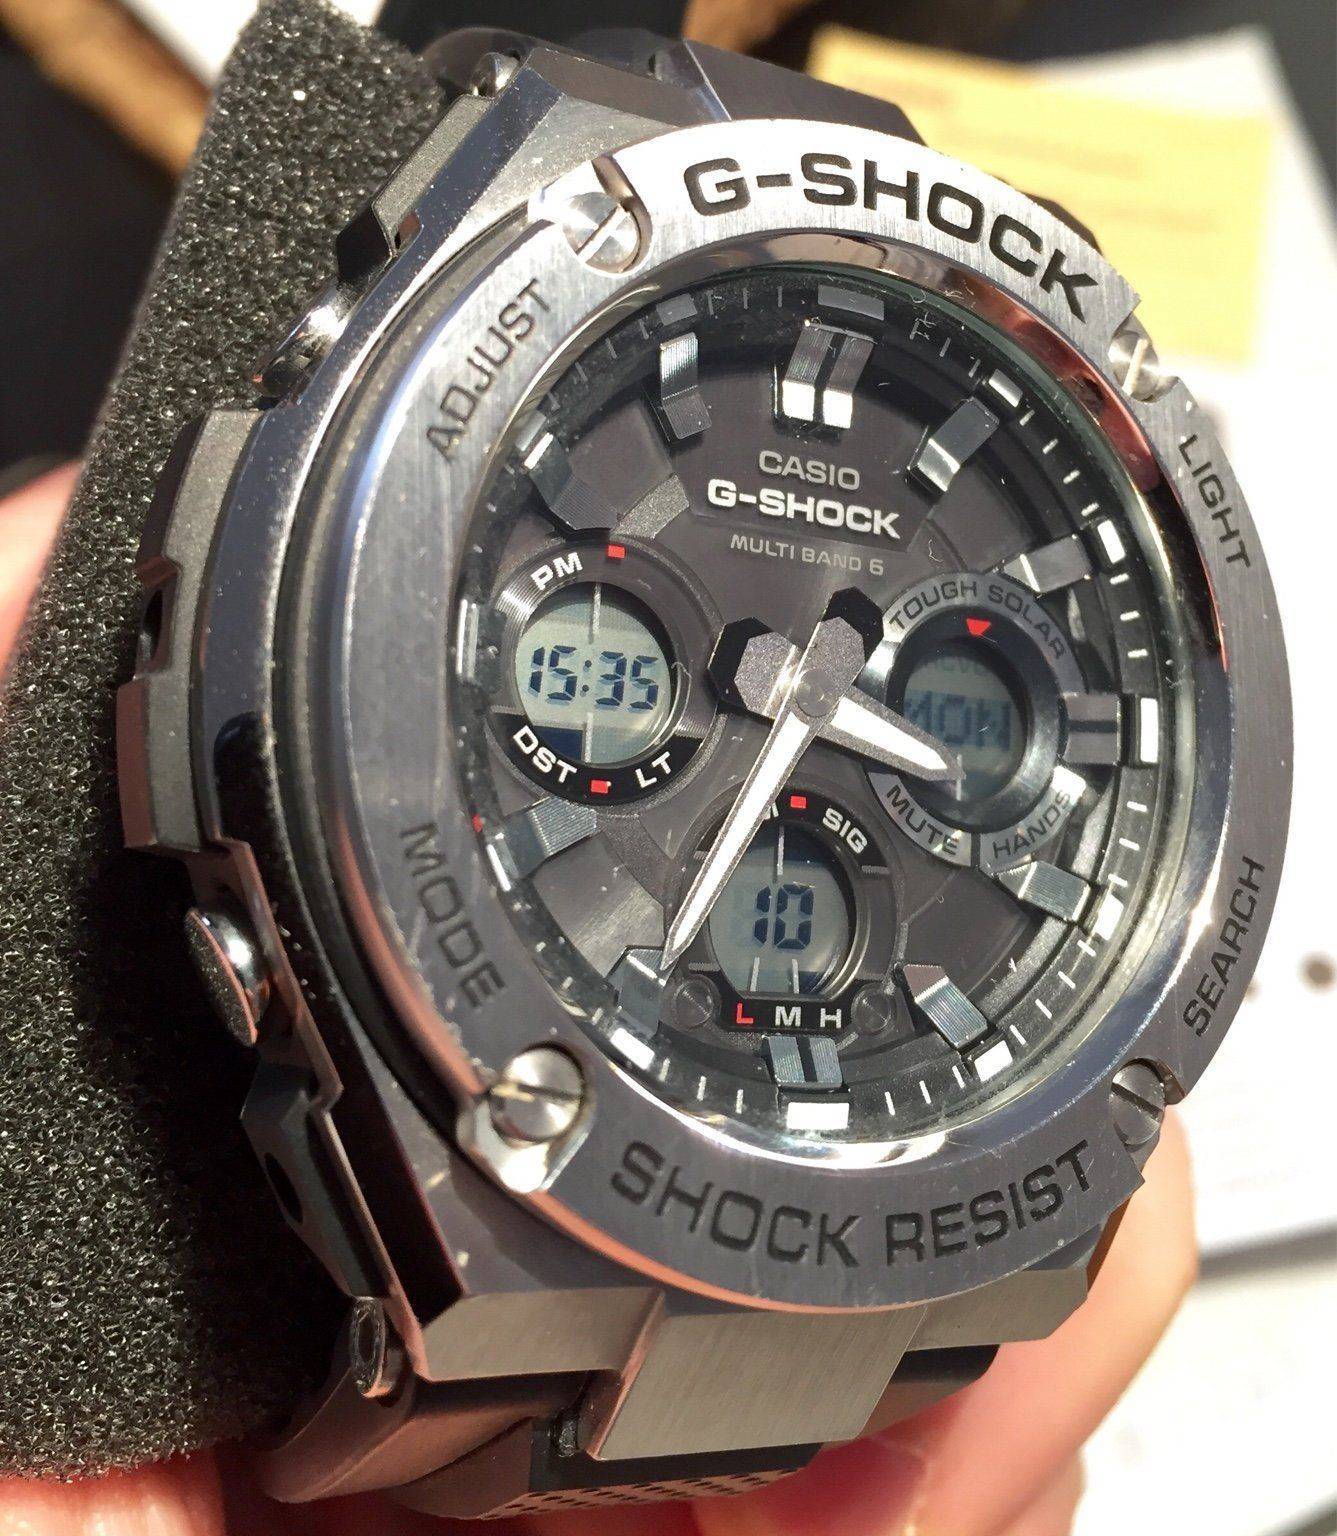 Casio G-Shock GST-W110 1 AER | Relojes Especiales, EL foro de relojes